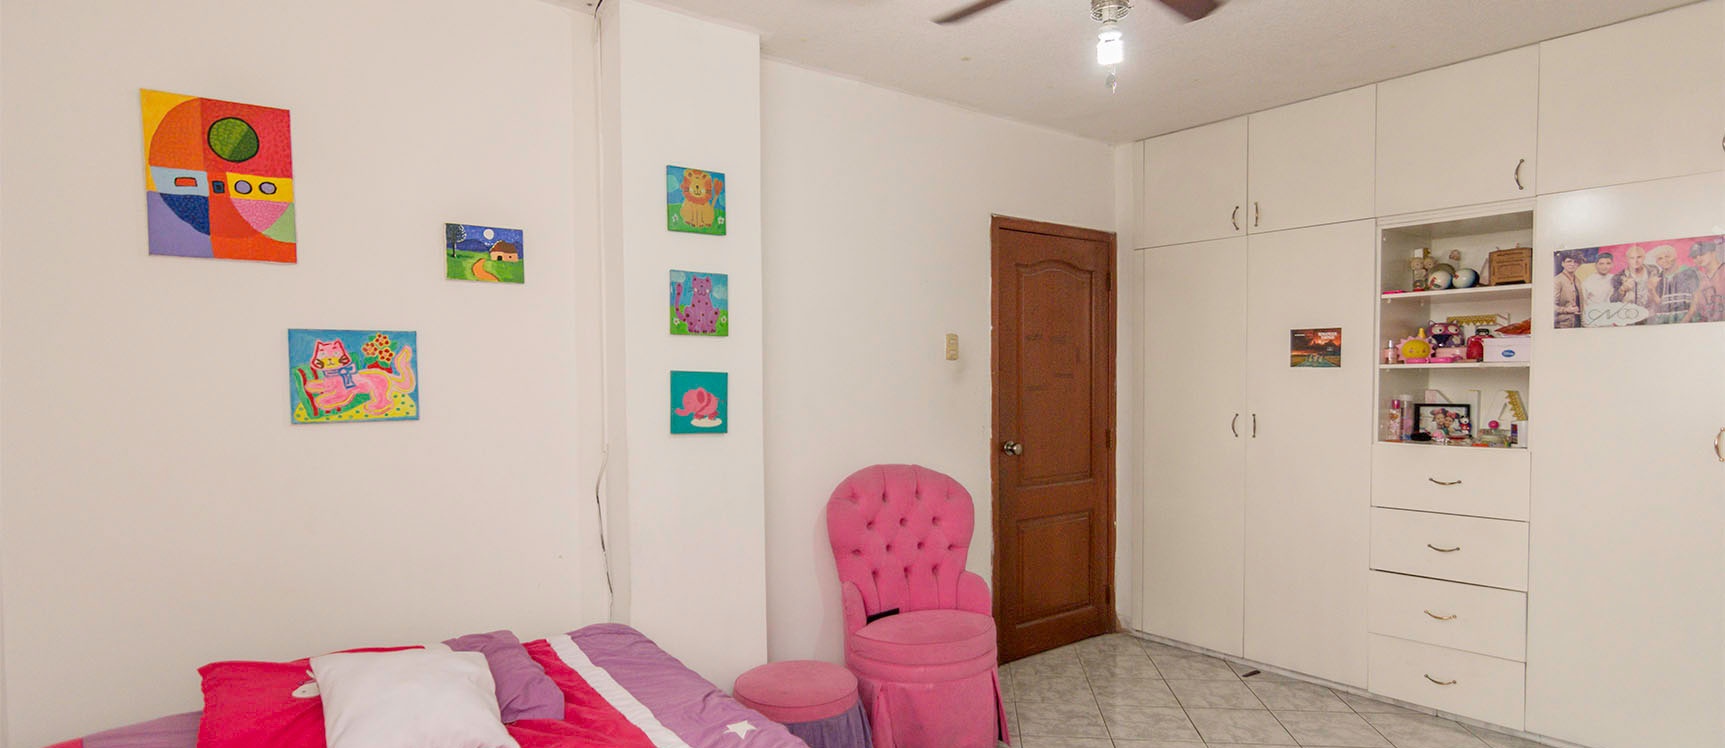 GeoBienes - Departamento en venta Santa Maria Alamos, Norte de Guayaquil - Plusvalia Guayaquil Casas de venta y alquiler Inmobiliaria Ecuador